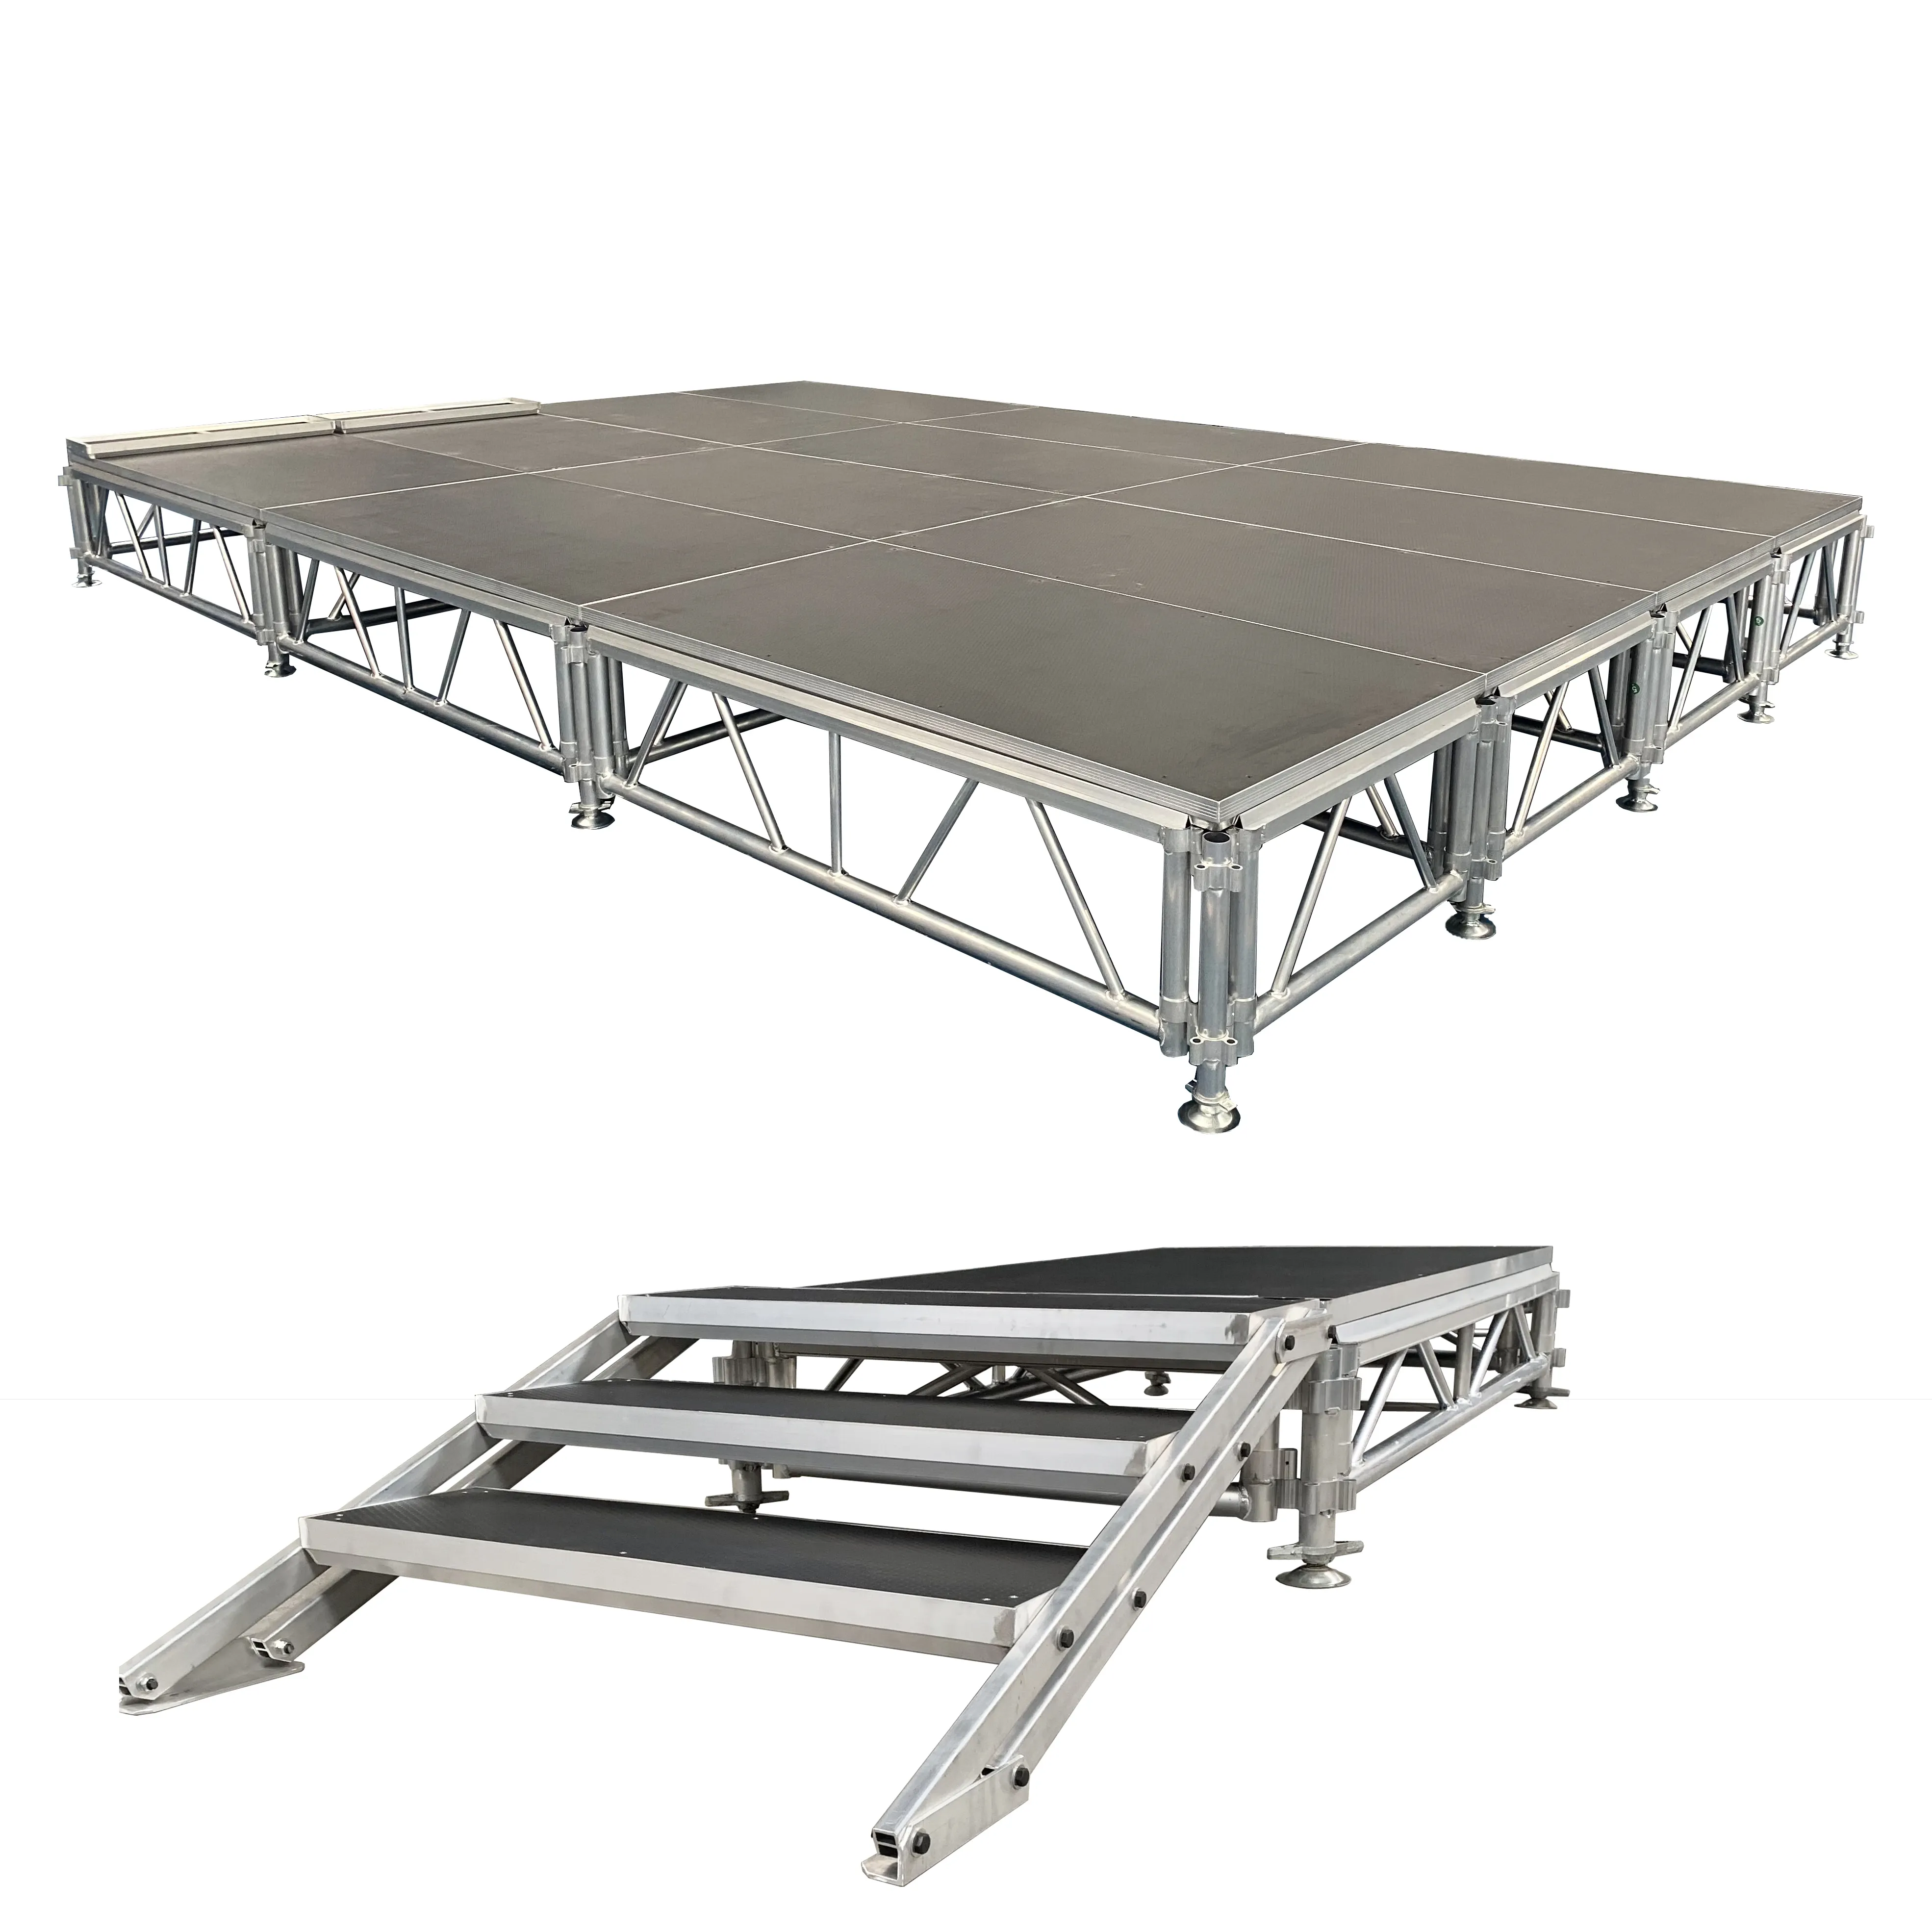 Kkmark-montaje rápido de 3 niveles, plataforma de aluminio ajustable para conciertos, portátil, modular, decoración para eventos